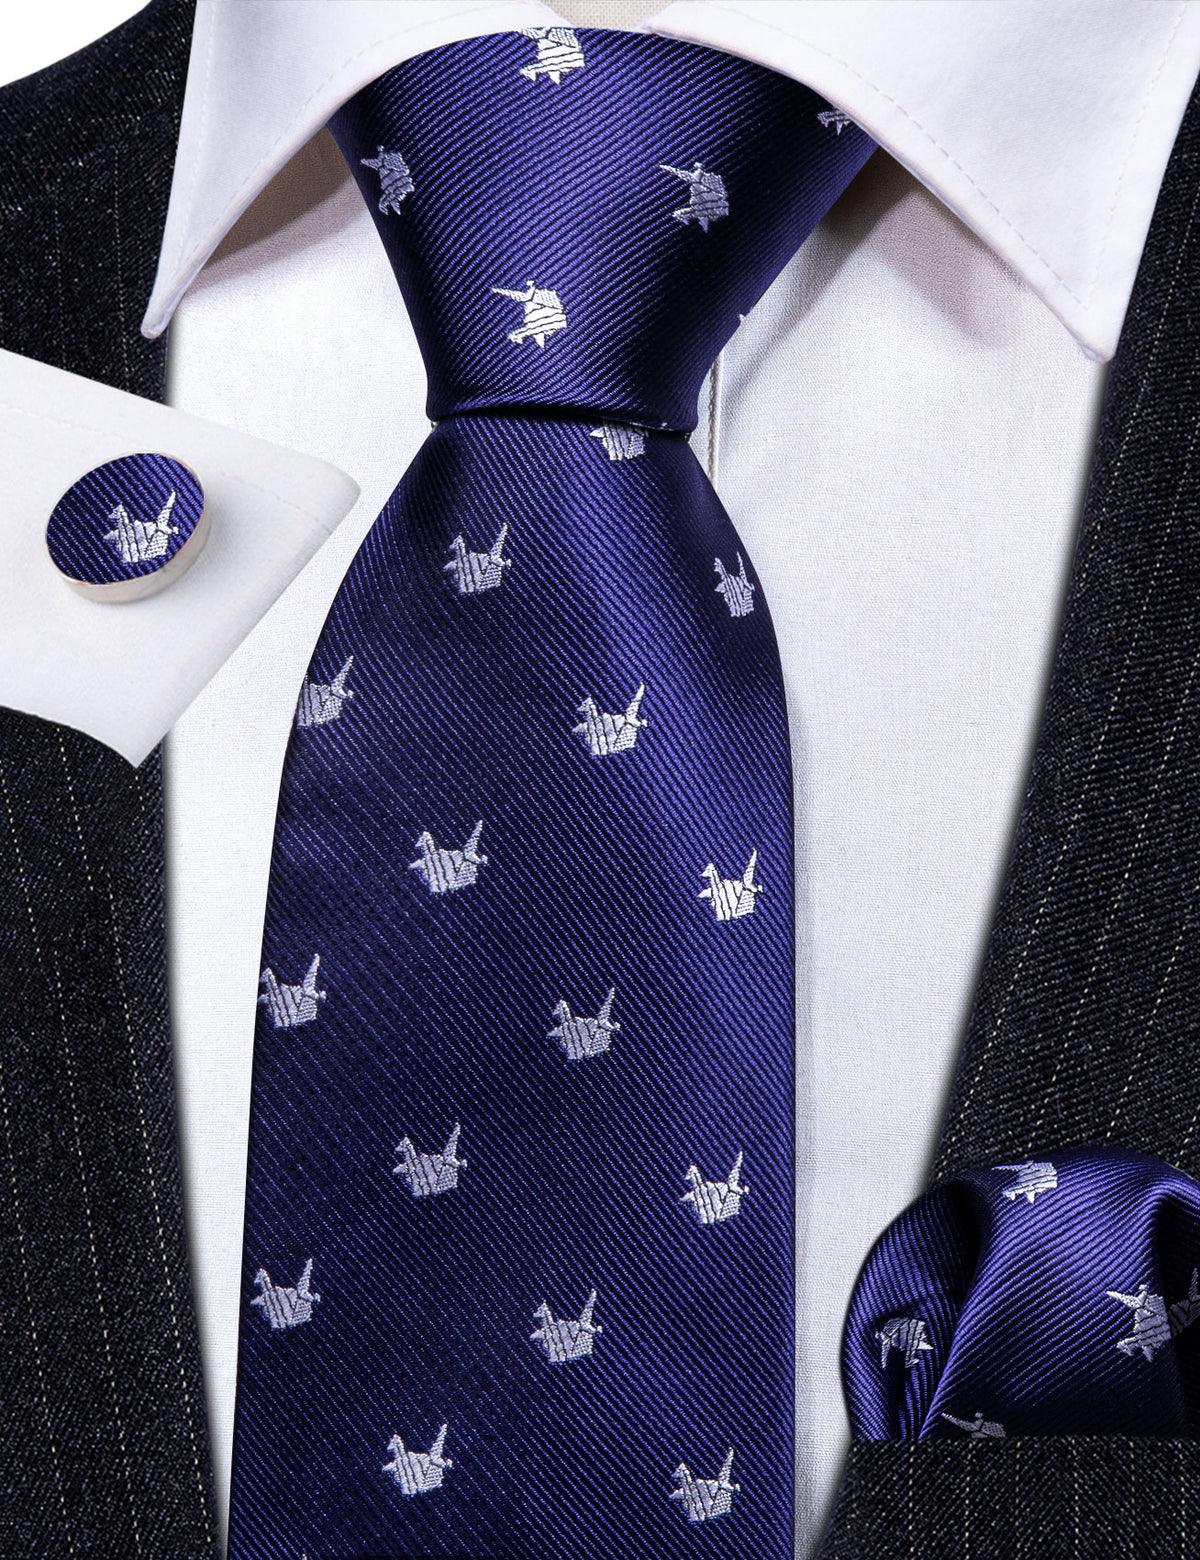 Blue White Crane Bird Silk Tie Pocket Square Cufflink Set - STYLETIE